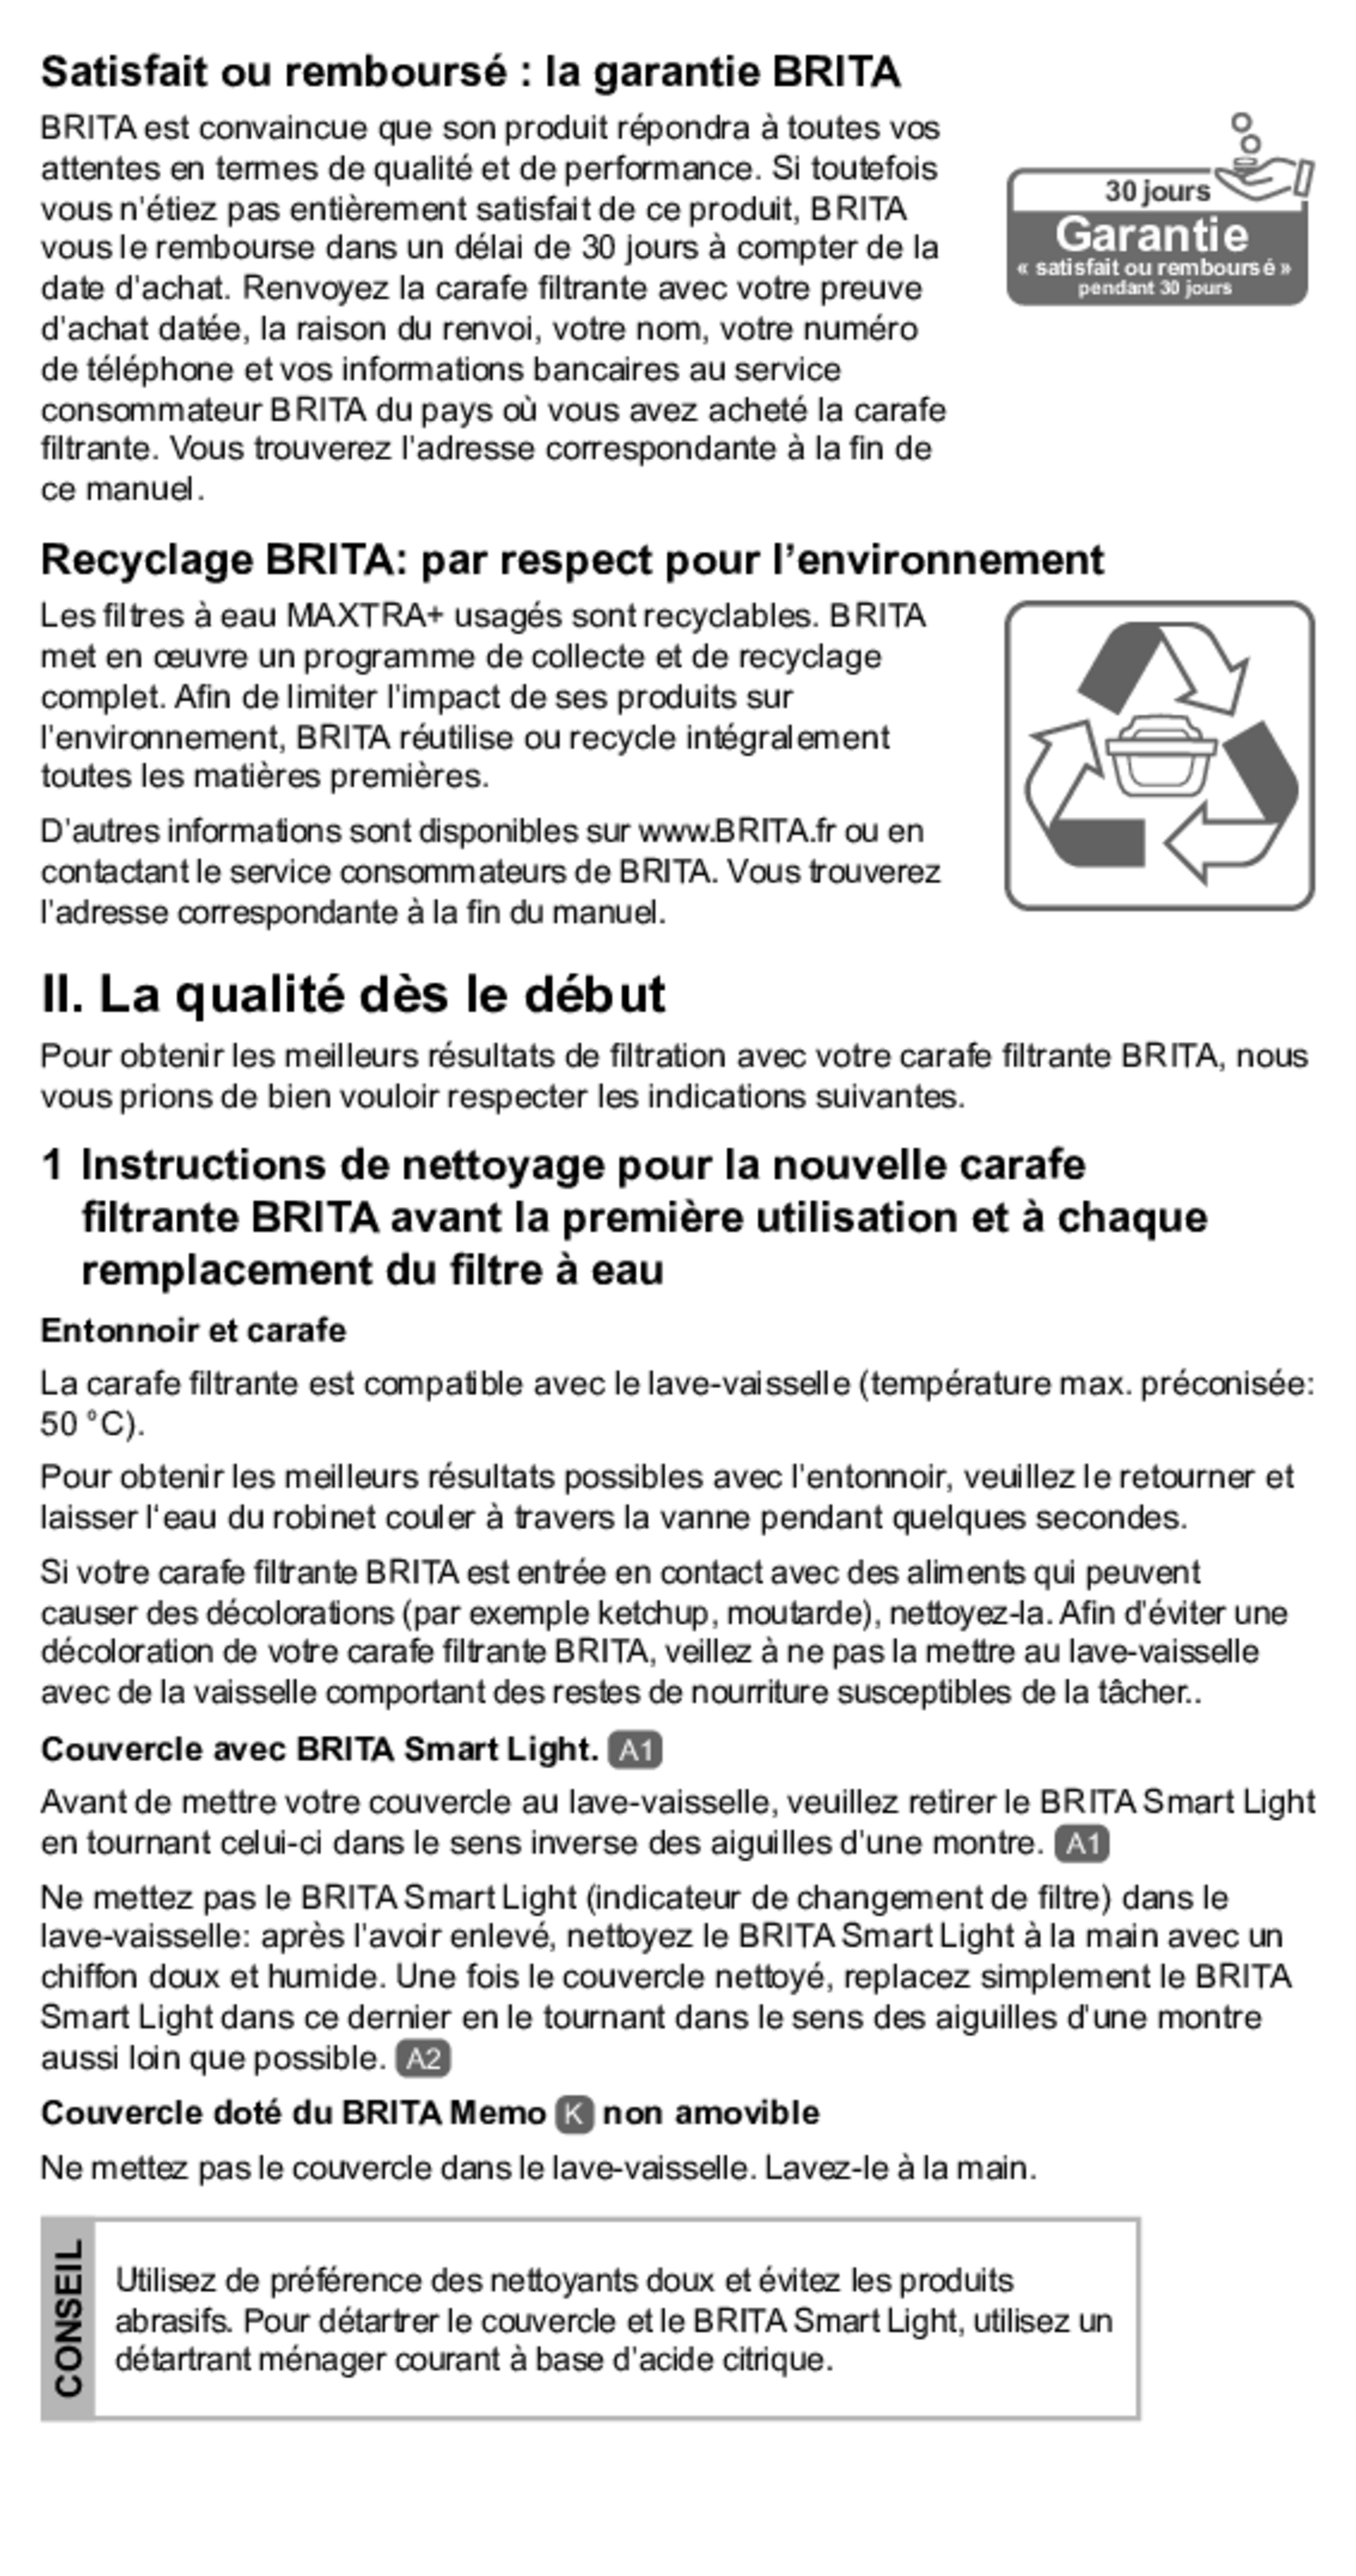 Filterpatroon Maxtra Pro afbeelding van document #9, gebruiksaanwijzing